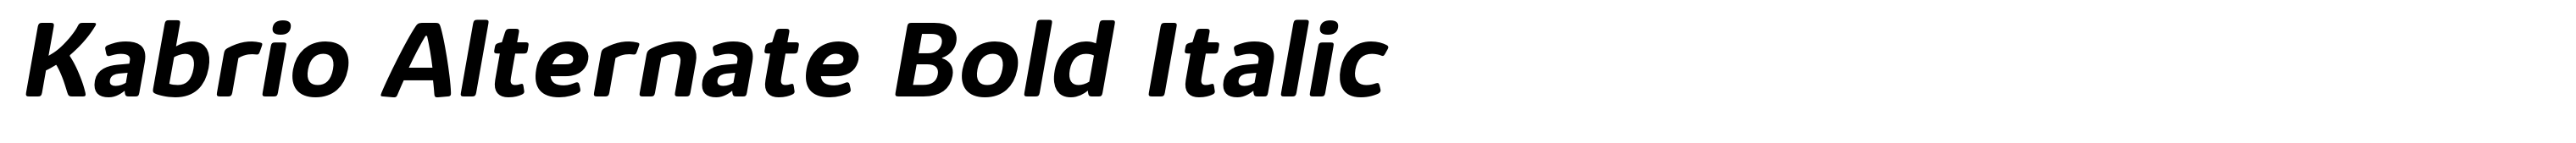 Kabrio Alternate Bold Italic